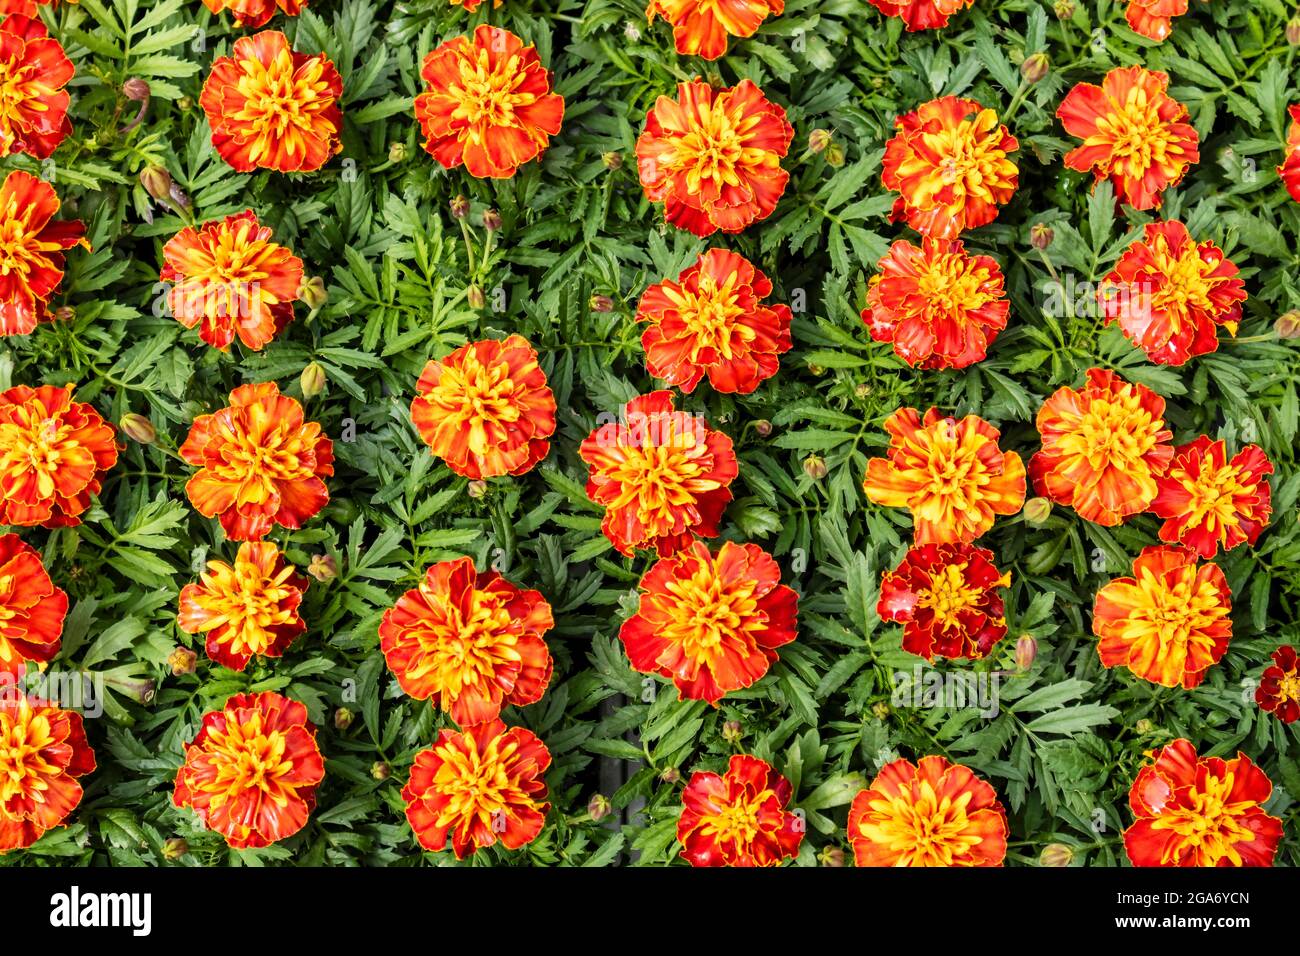 Background of orange flowering Marigold plants. Stock Photo